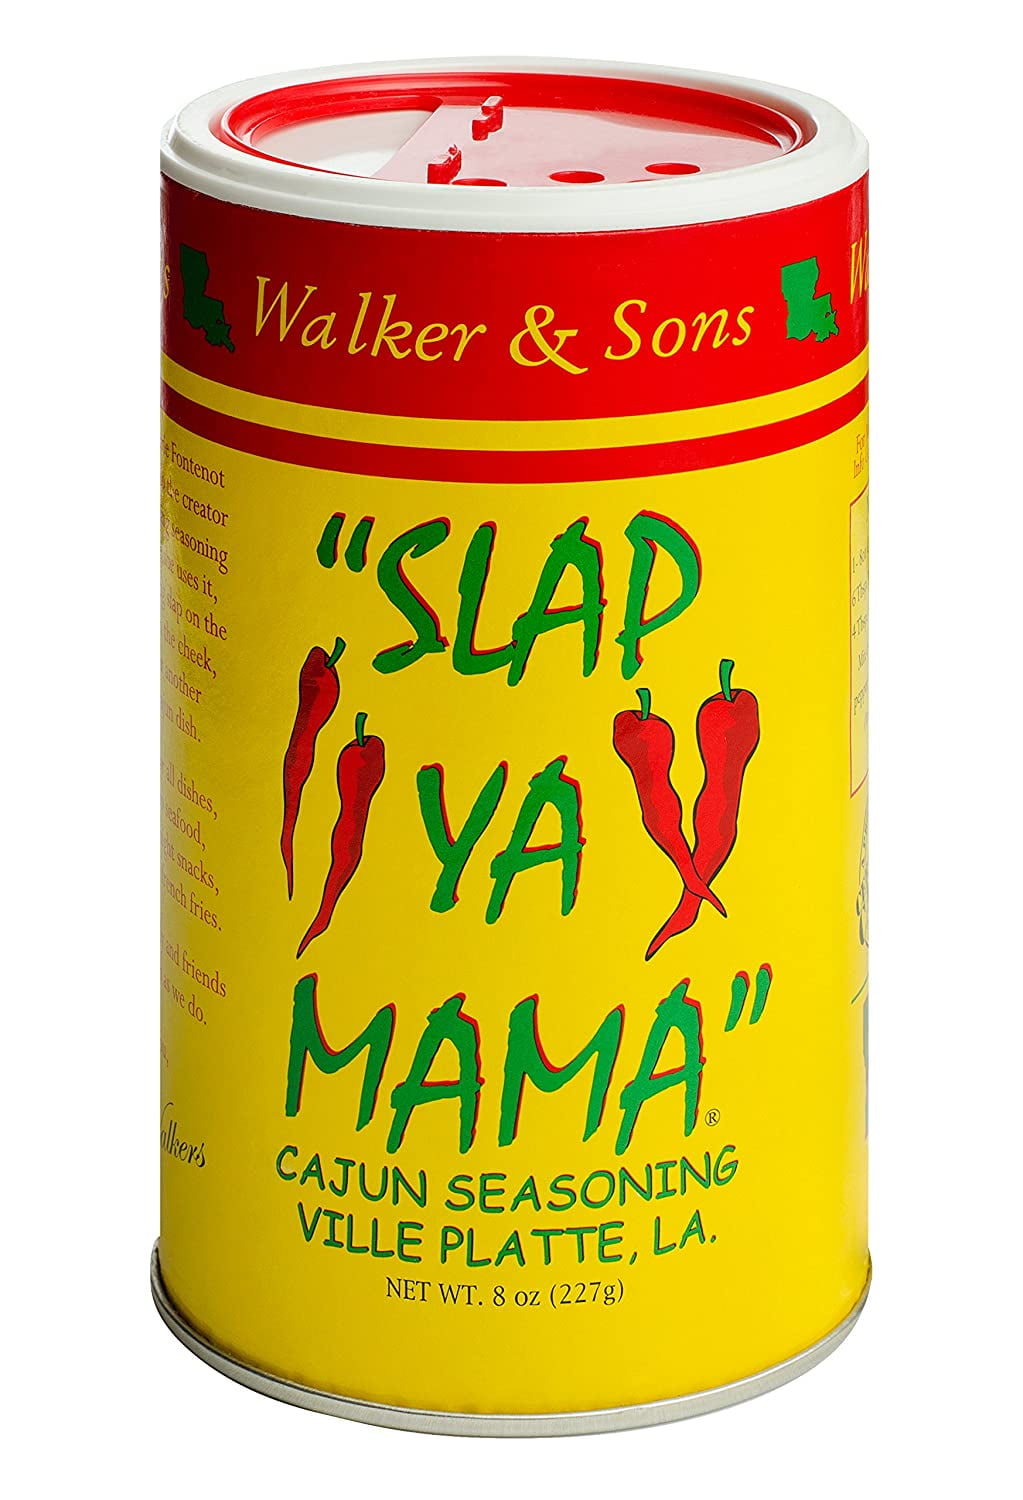 Slap Ya Mama All Natural Cajun Seasoning from Louisiana Original Blend 